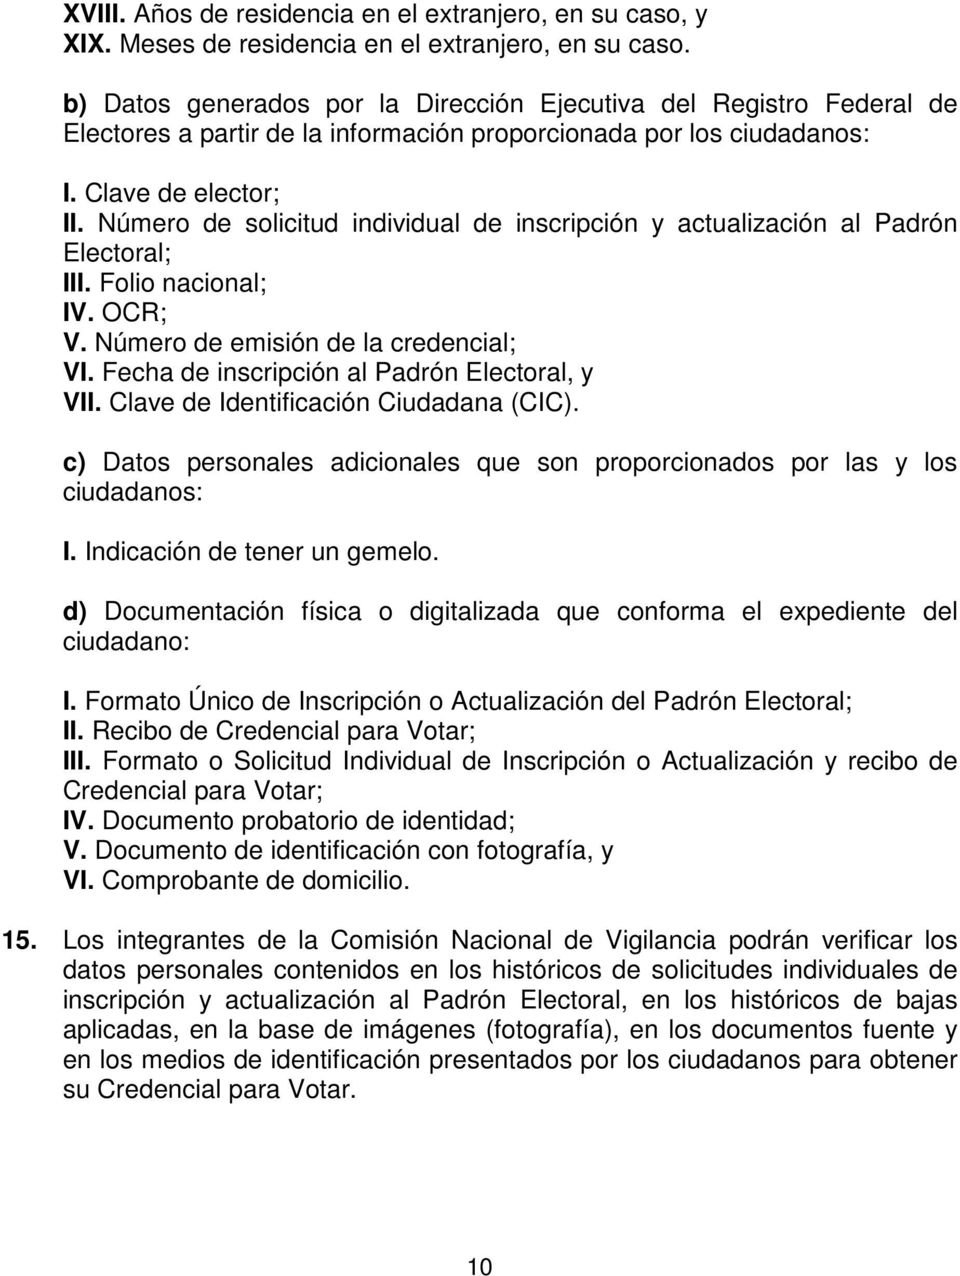 Número de solicitud individual de inscripción y actualización al Padrón Electoral; III. Folio nacional; IV. OCR; V. Número de emisión de la credencial; VI.